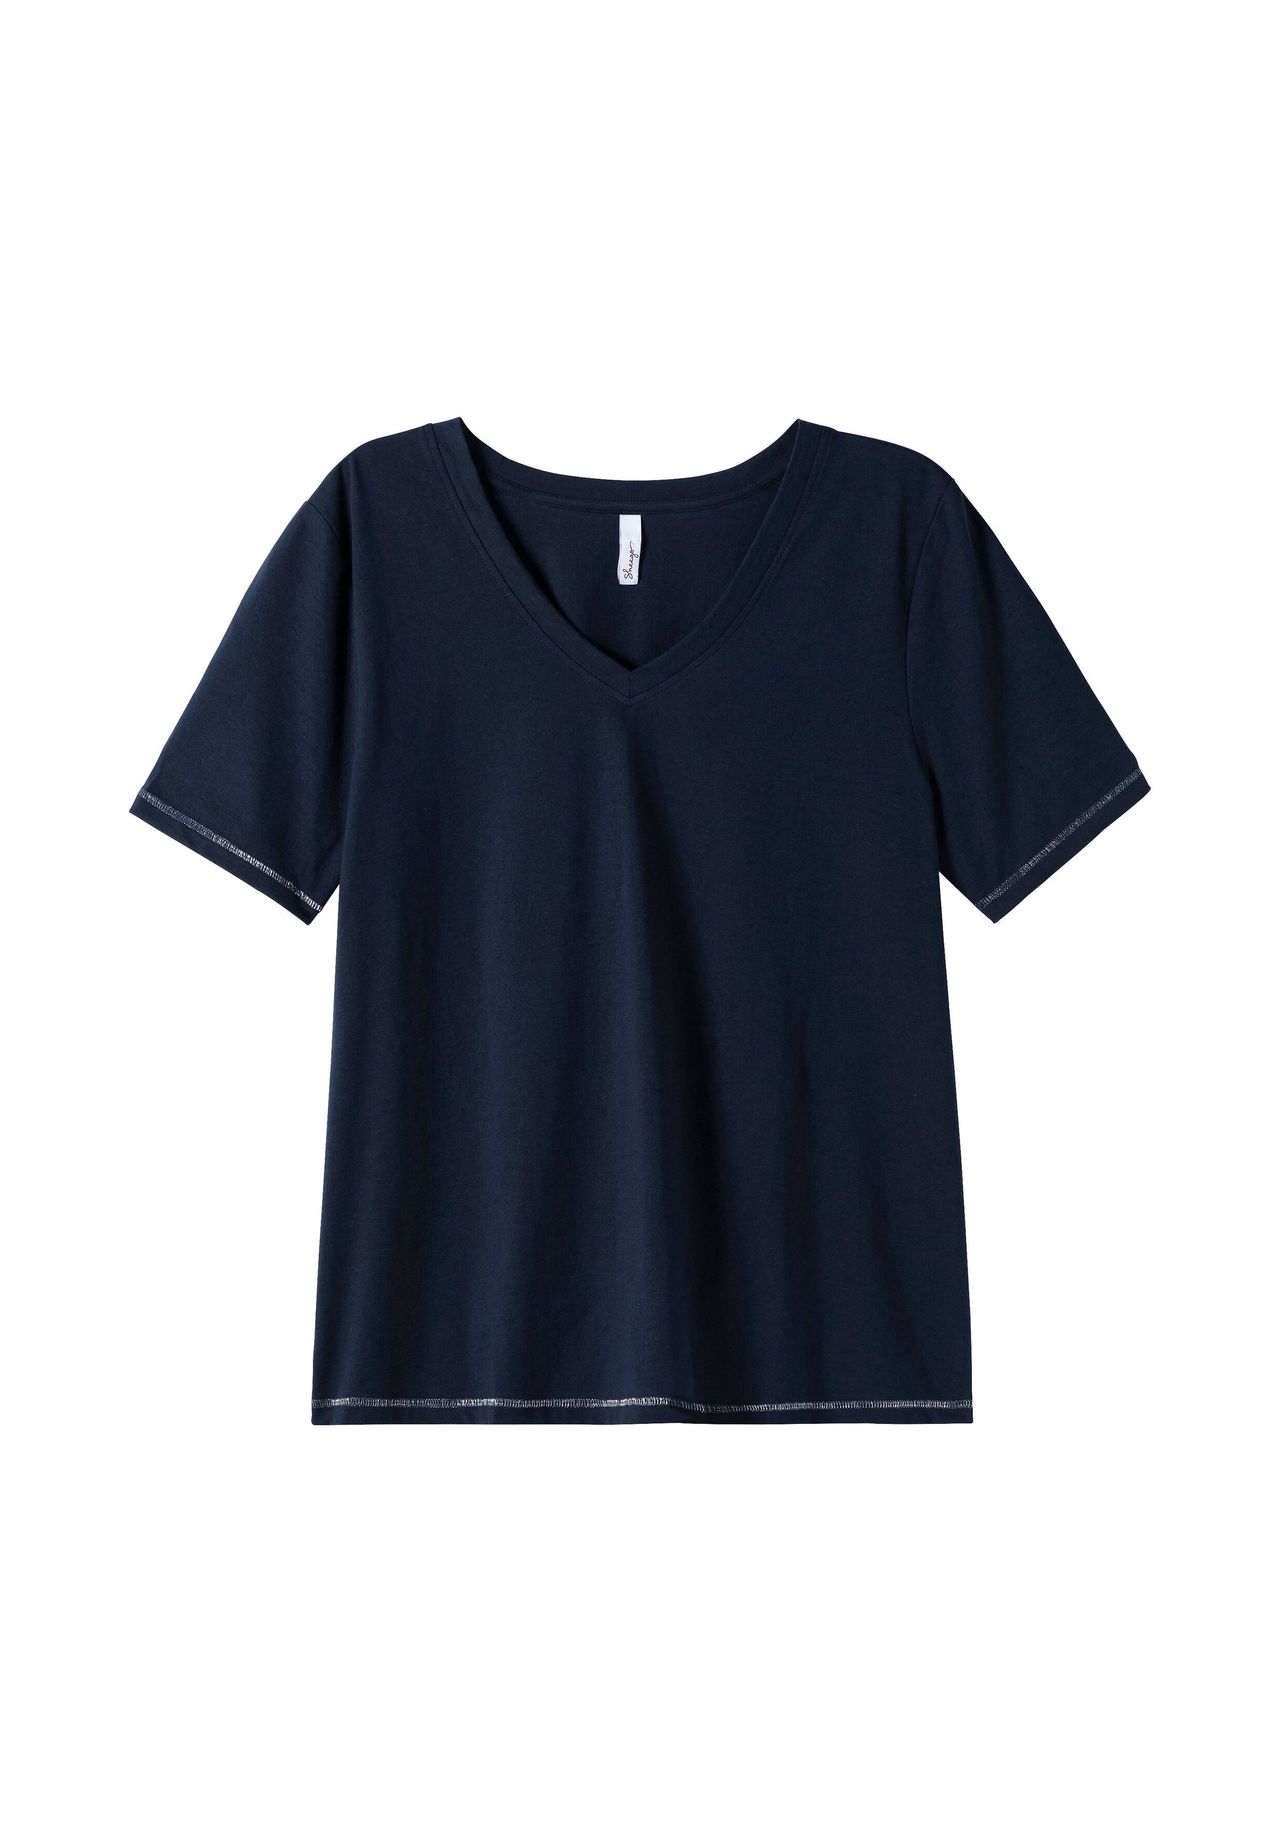 sheego Shirt mit kleinem Glitzerdruck auf der Schulter | GALERIA